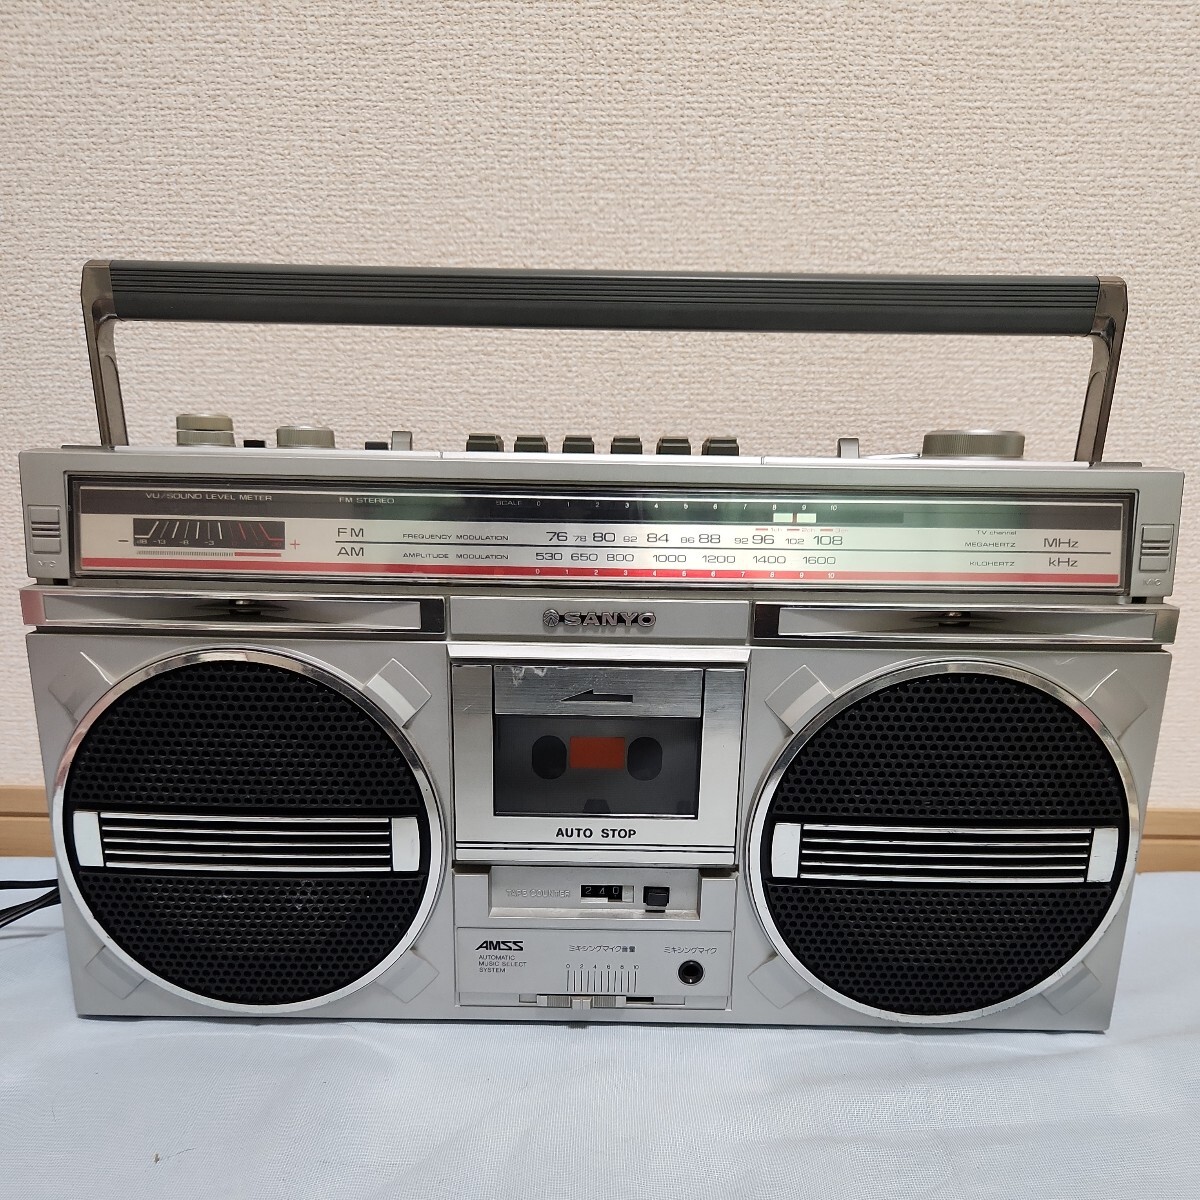 ジャンク品 SANYO MR-X830 ラジカセ サンヨー 三洋電機 昭和レトロ カセット ラジオの画像1